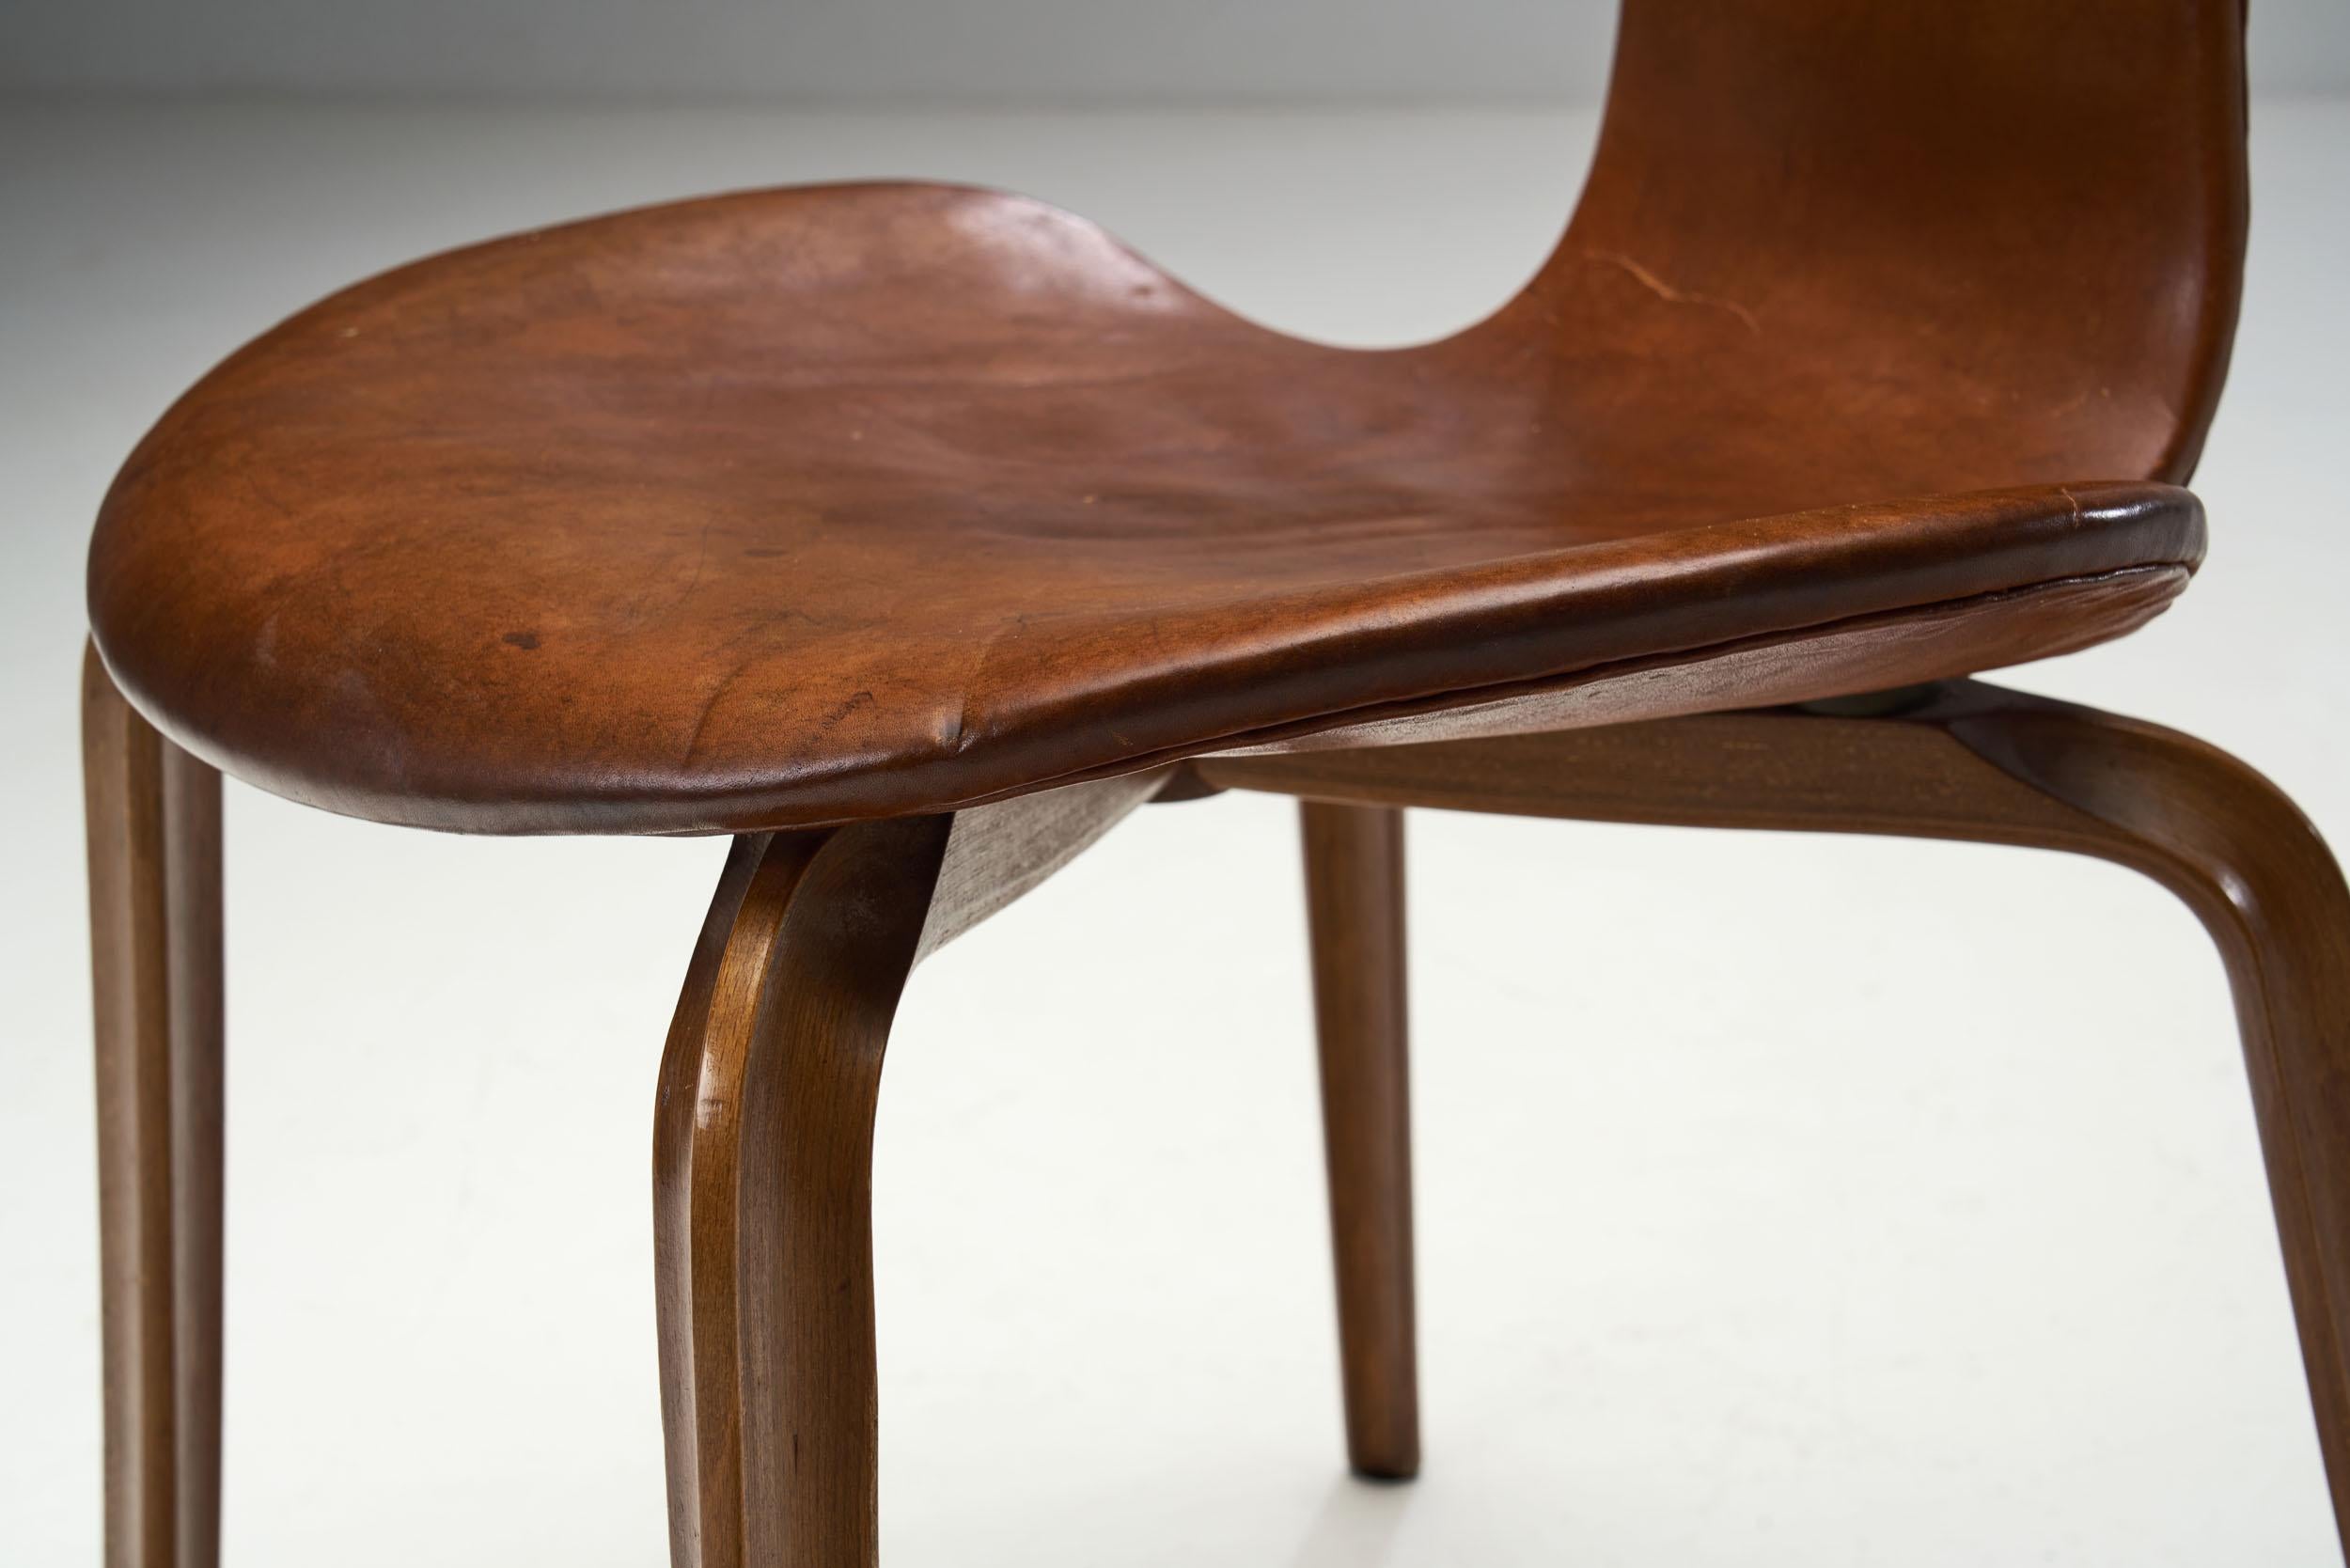 Arne Jacobsen “Grand Prix” Chairs for Fritz Hansen, Denmark 1950s For Sale 10